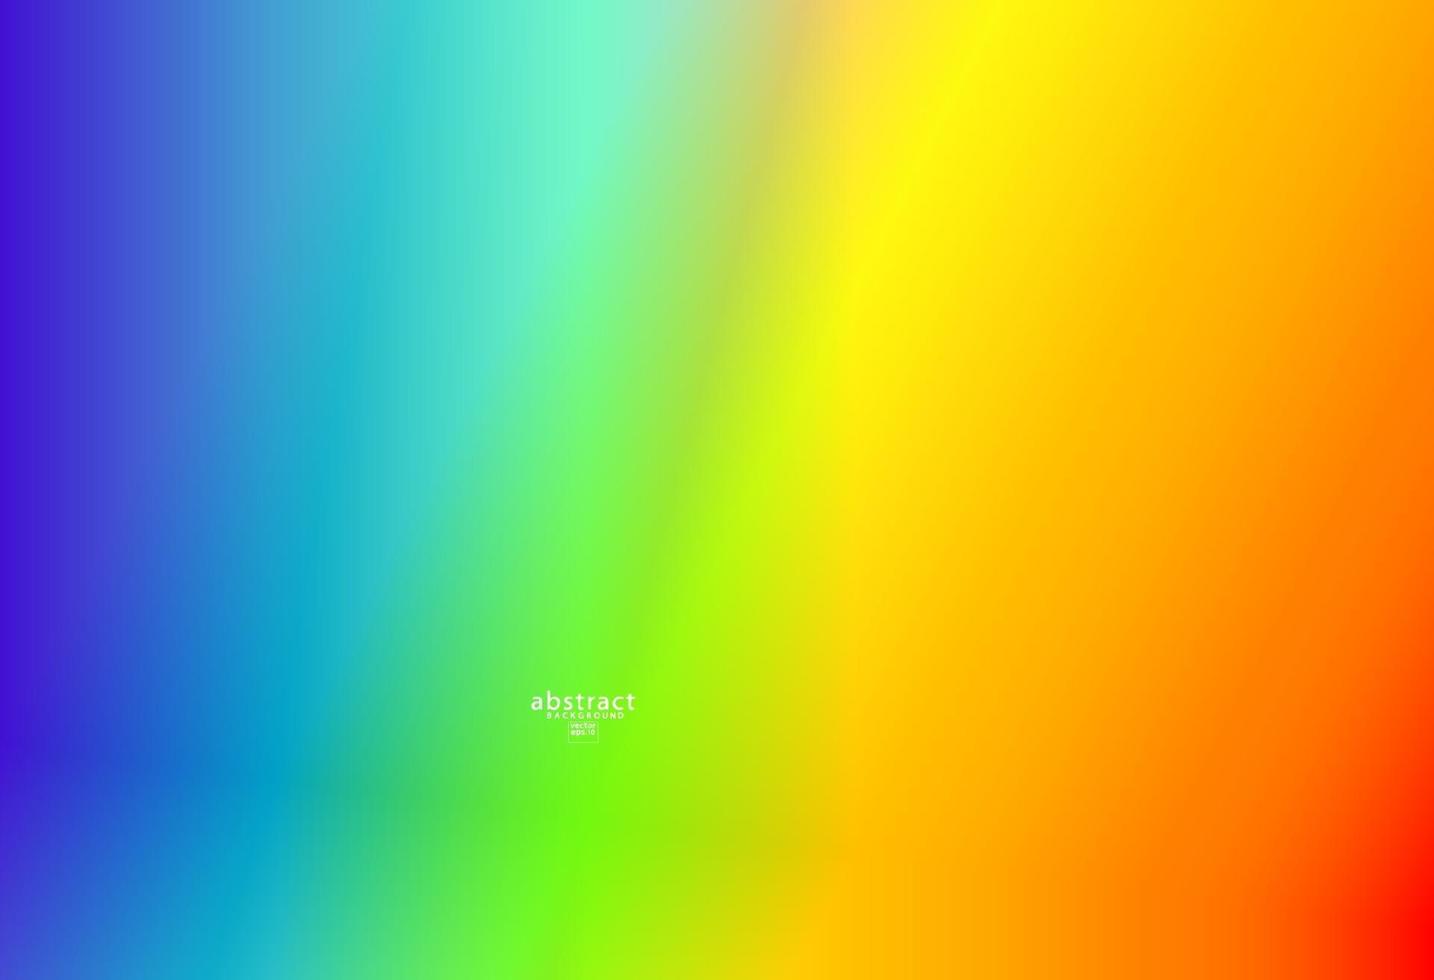 abstrakte unscharfe Farbverlaufshintergrund helle Regenbogenfarben. bunte glatte weiche Bannerschablone. kreative lebendige Vektorillustration vektor